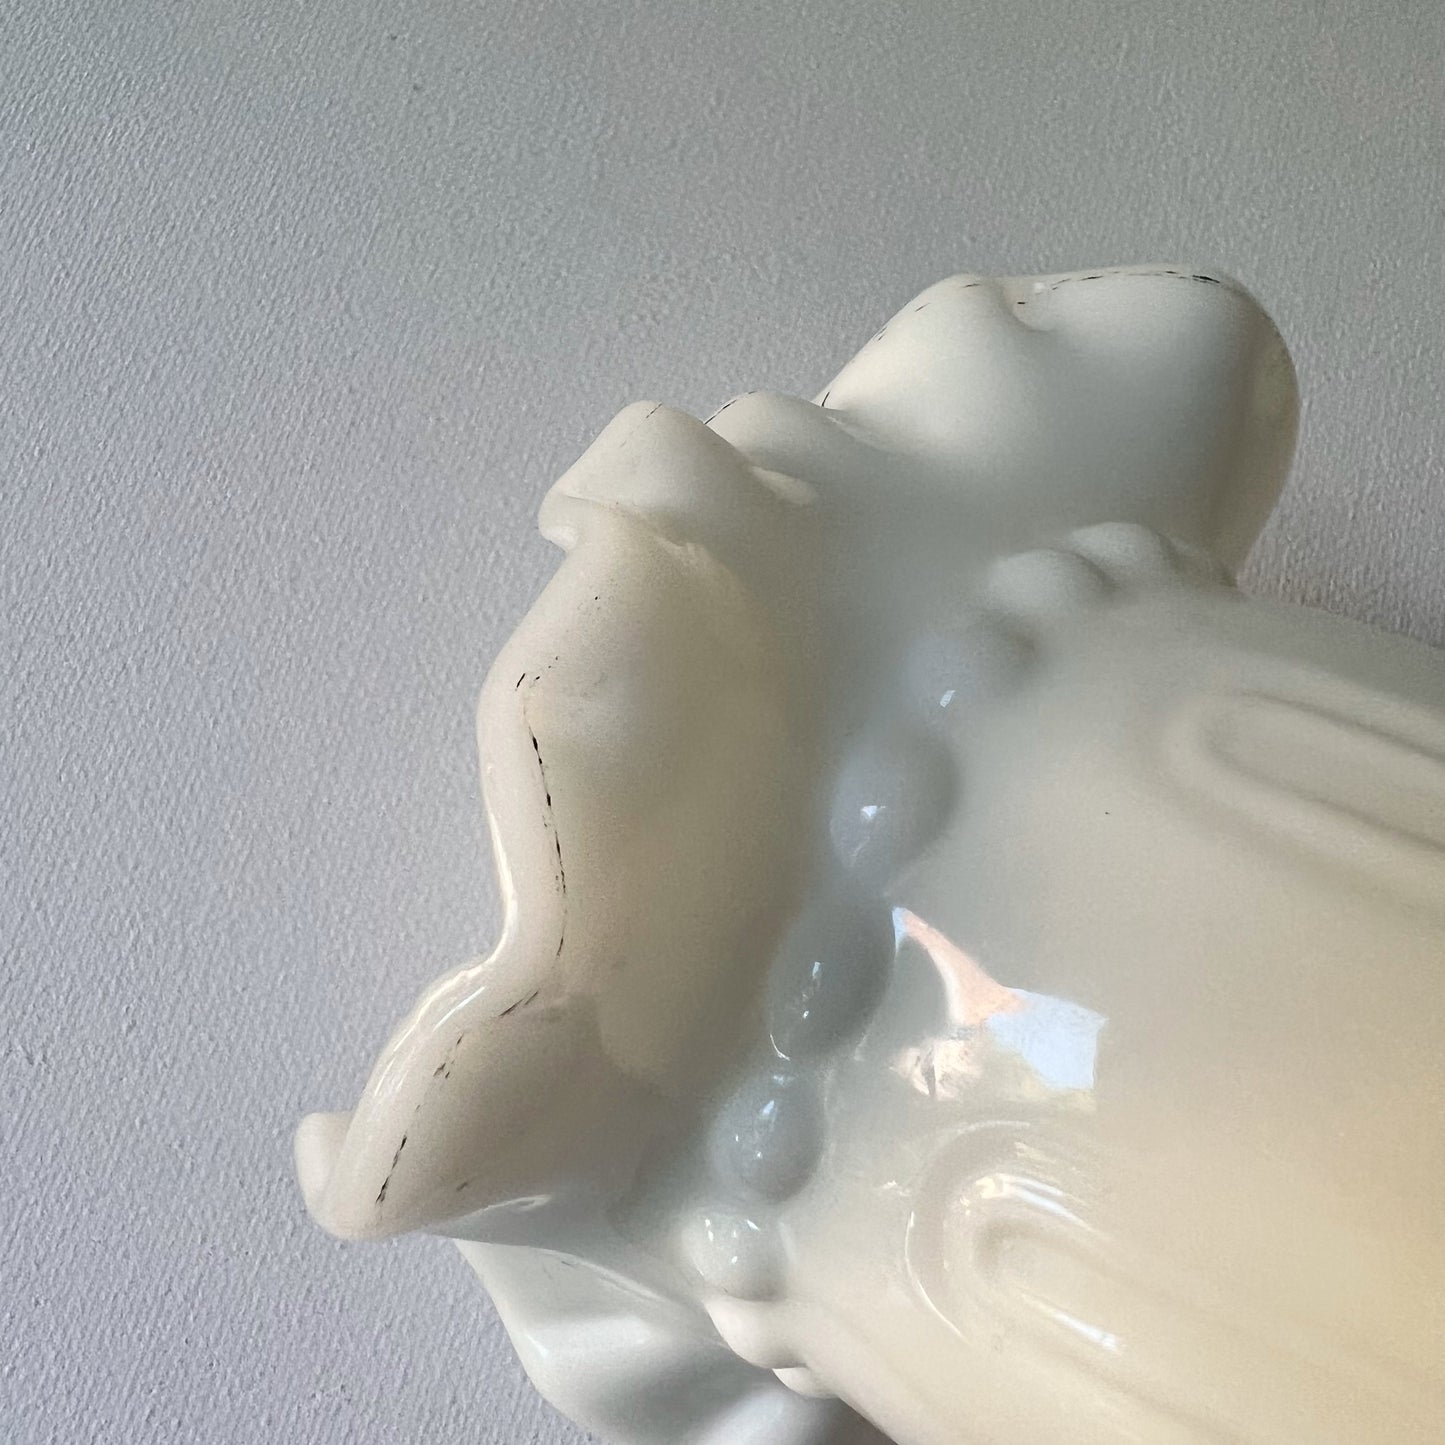 【Vintage】France ‐ 1950s White Milk Glass Hand Vase